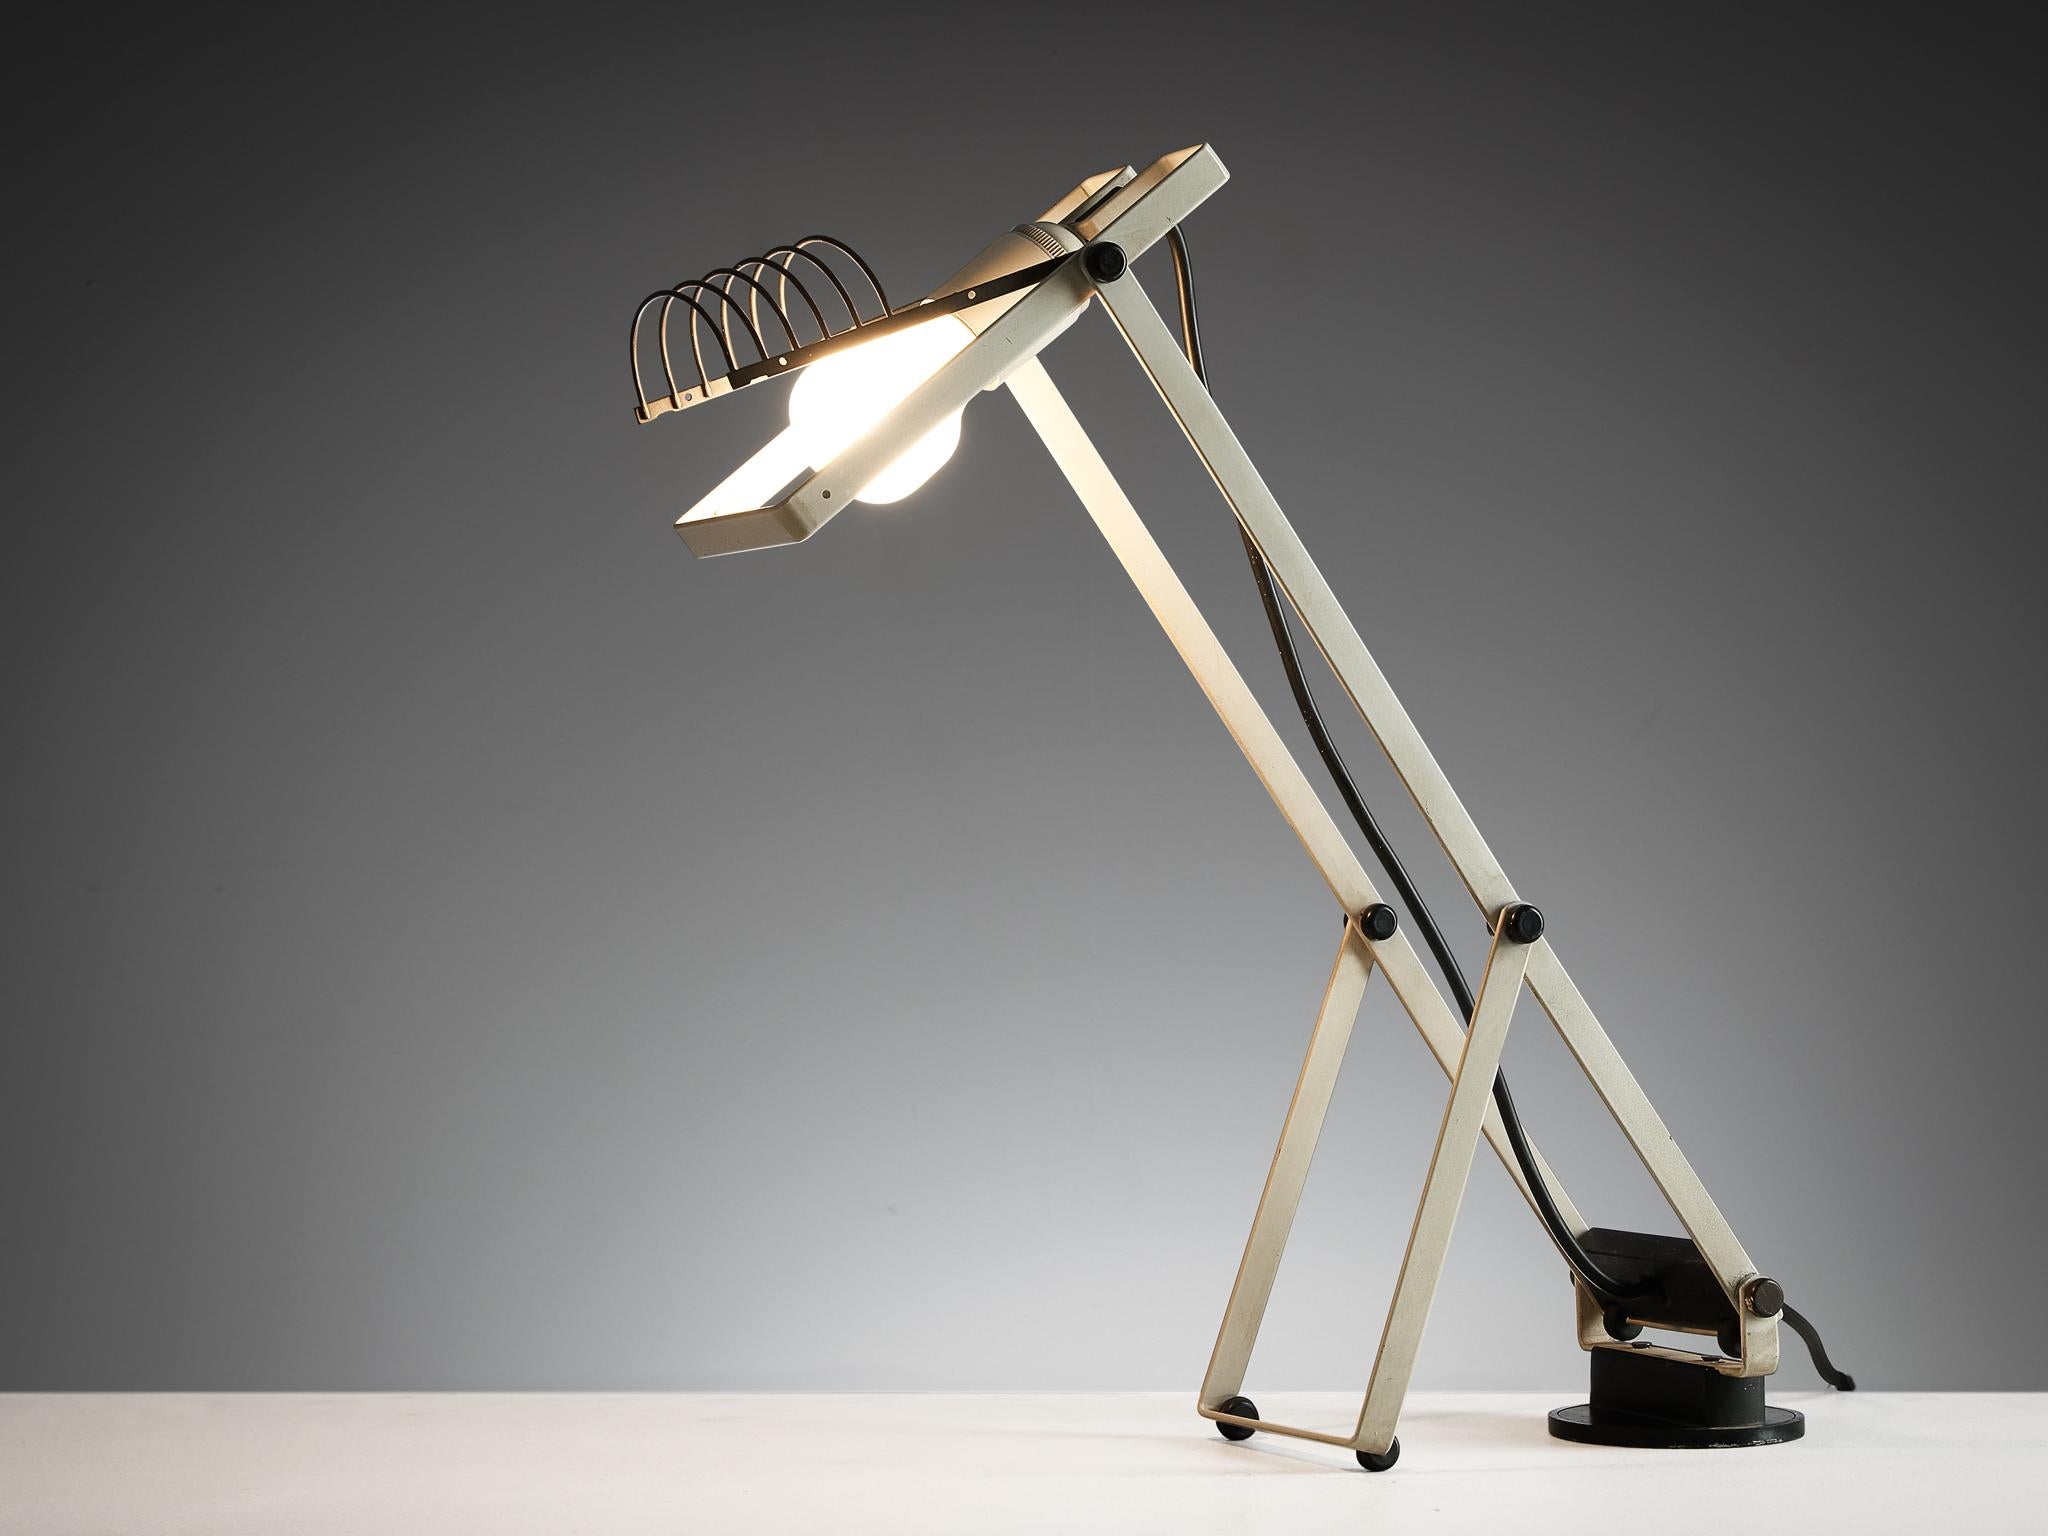 Ernesto Gismondi für Artemide, Tischleuchte Modell 'Sintesi Tavolo', lackierter Stahl, verchromtes Metall, Italien, 1976 

Der Gründer von Artemide, Ernesto Gismondi (1931-2020), entwarf diese Leuchte in den siebziger Jahren. Eine hochfunktionelle